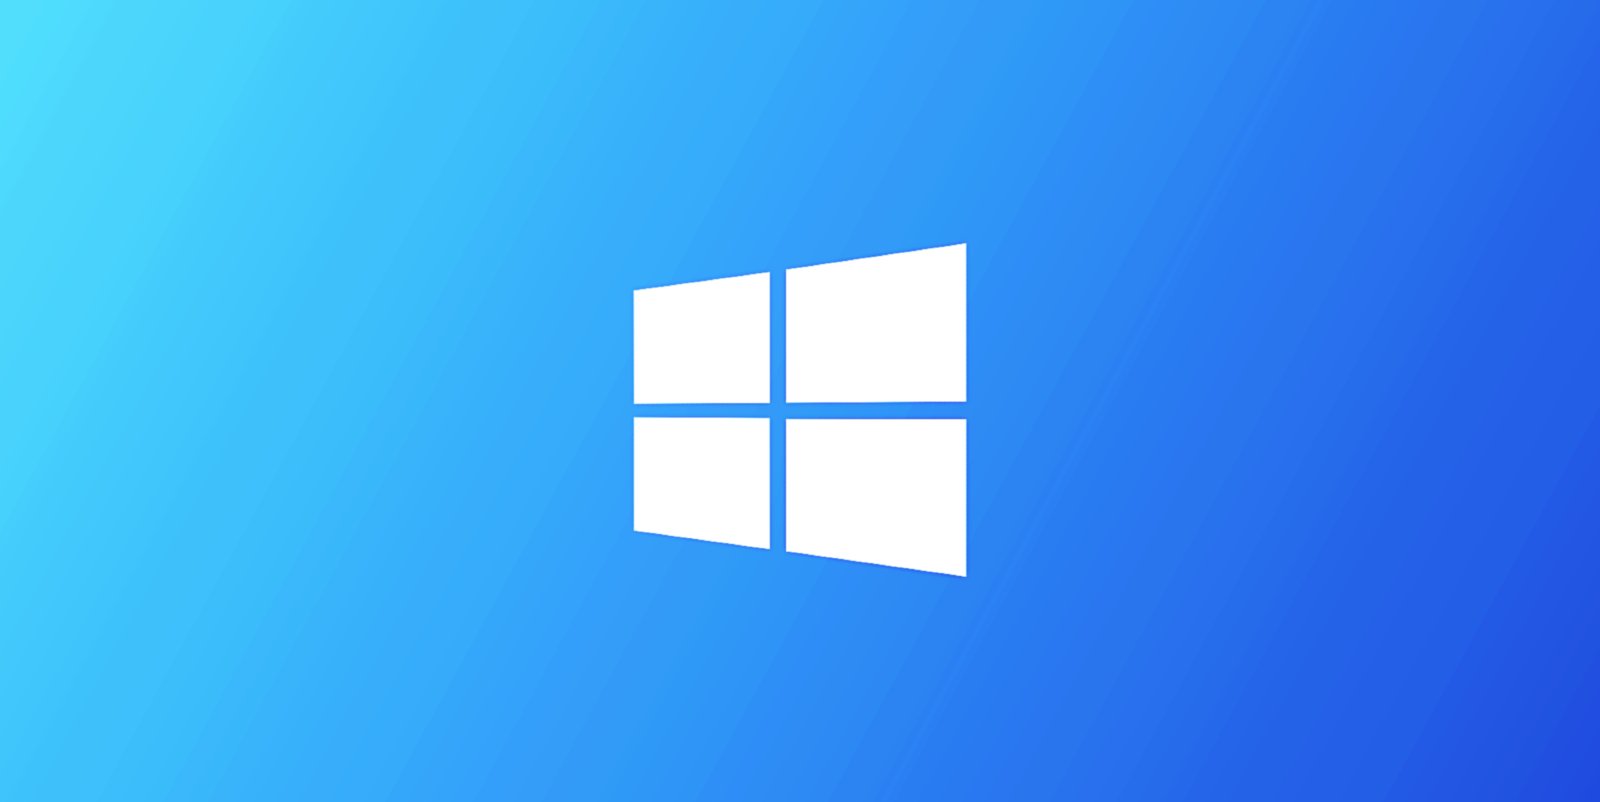 Windows 10 KB5031356更新发布，有25个改进
